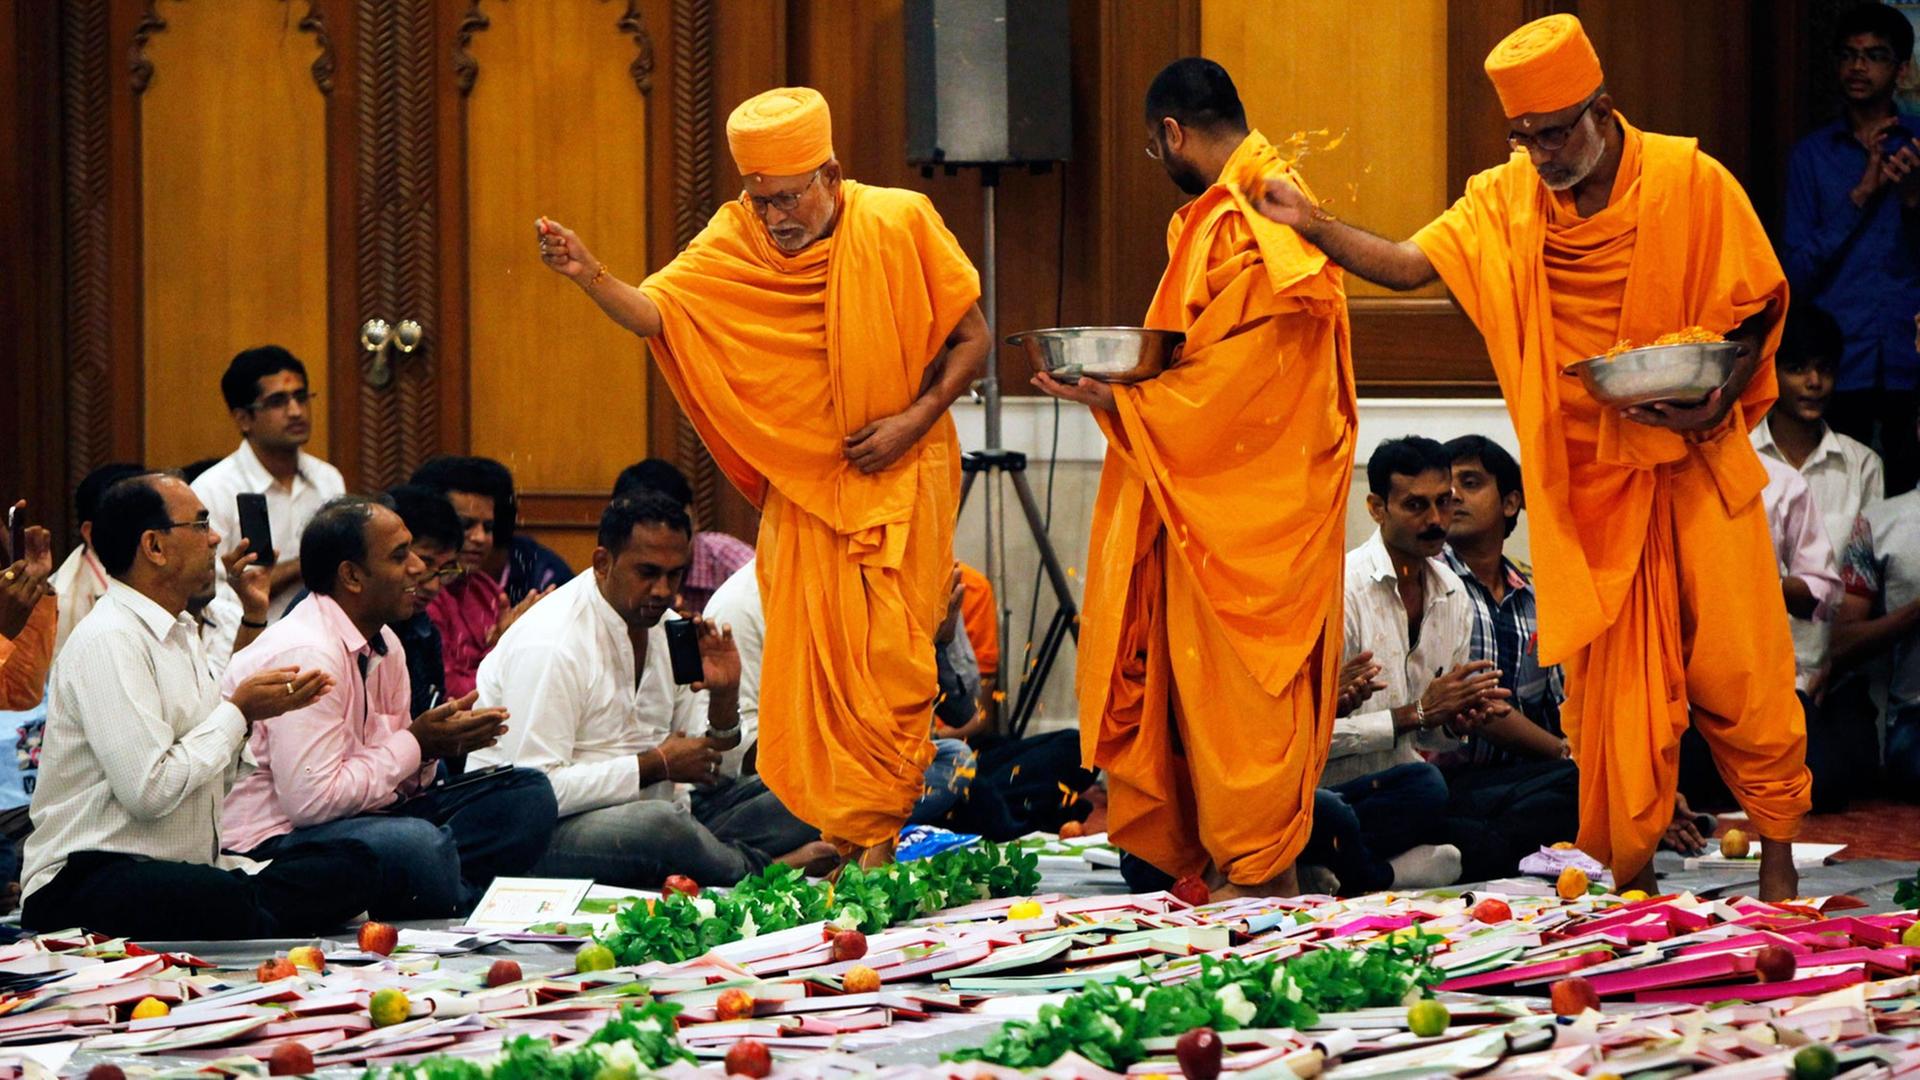 Priester und Gläubige in einem Tempel in Mumbai/Indien